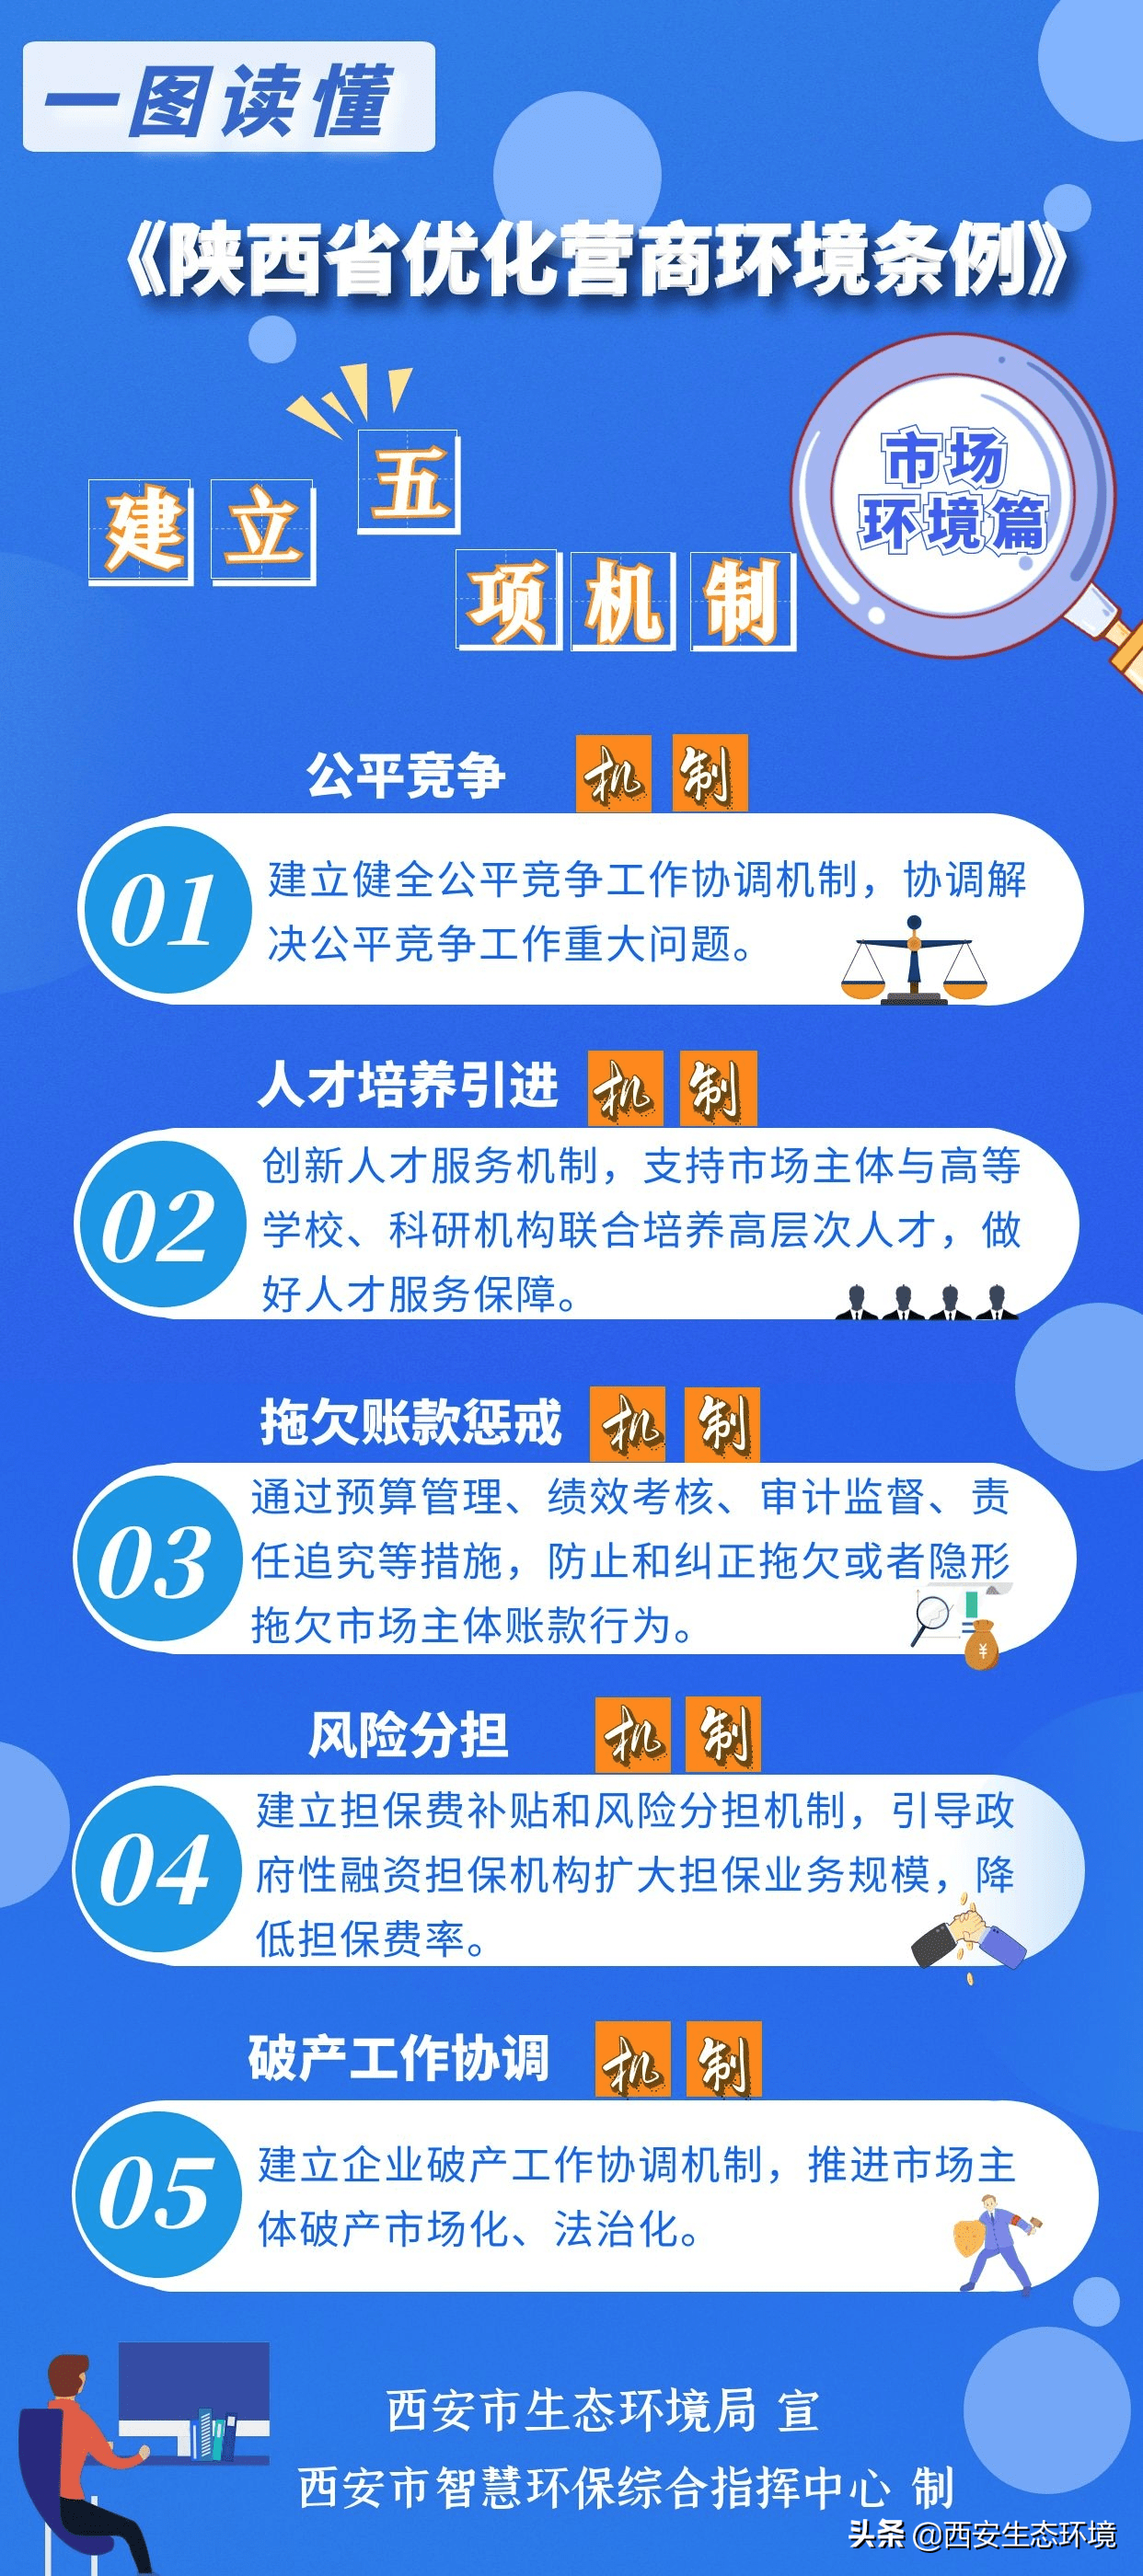 陕西省优化营商环境条例建立5项机制